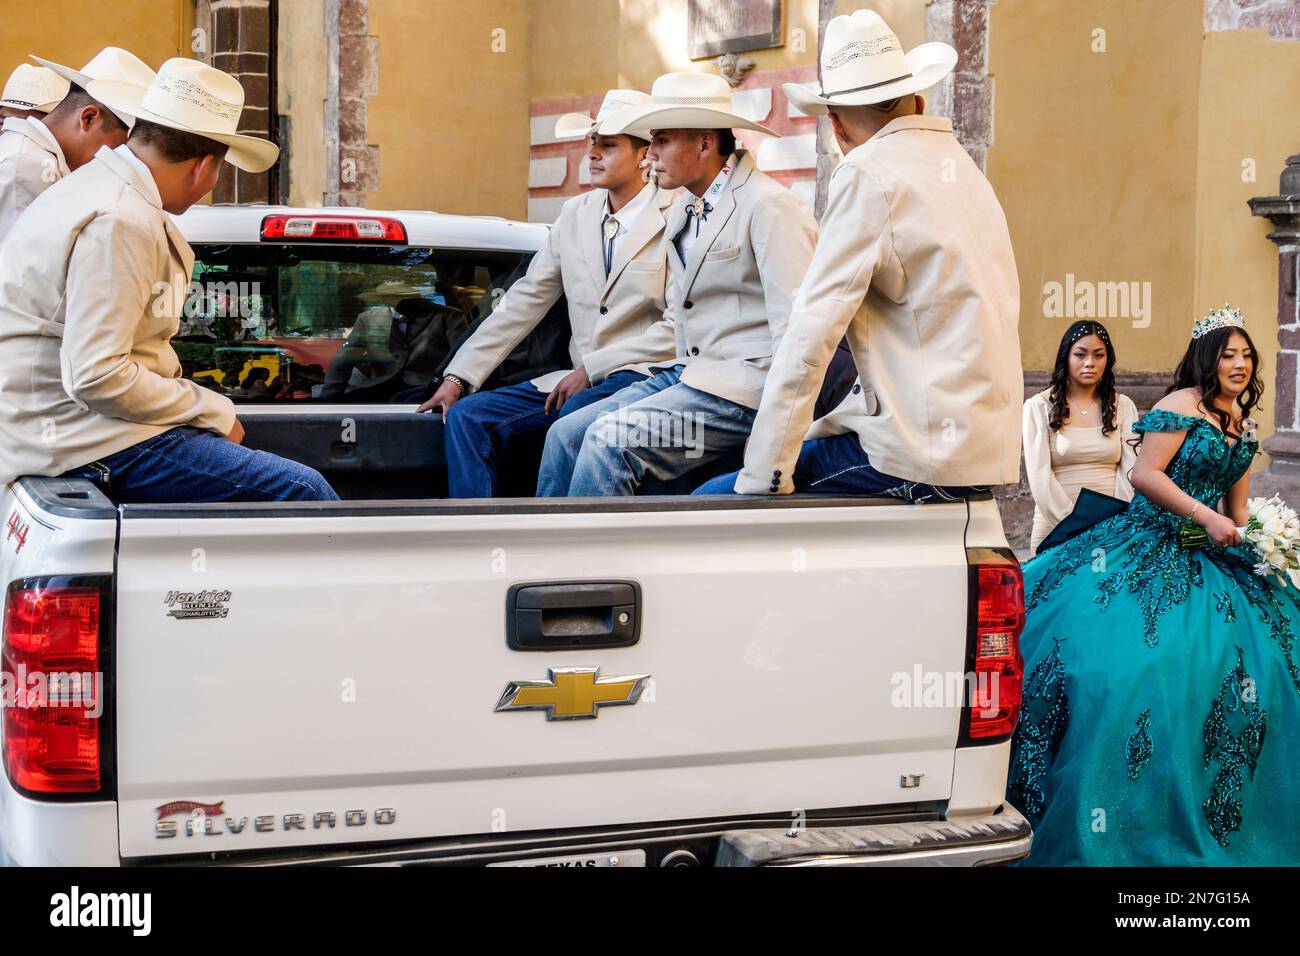 San Miguel de Allende Guanajuato Messico, Historico Centro storico zona Centro, seduto in camion pick-up, festa a tema gli ospiti che indossano cappello cowboy ha Foto Stock